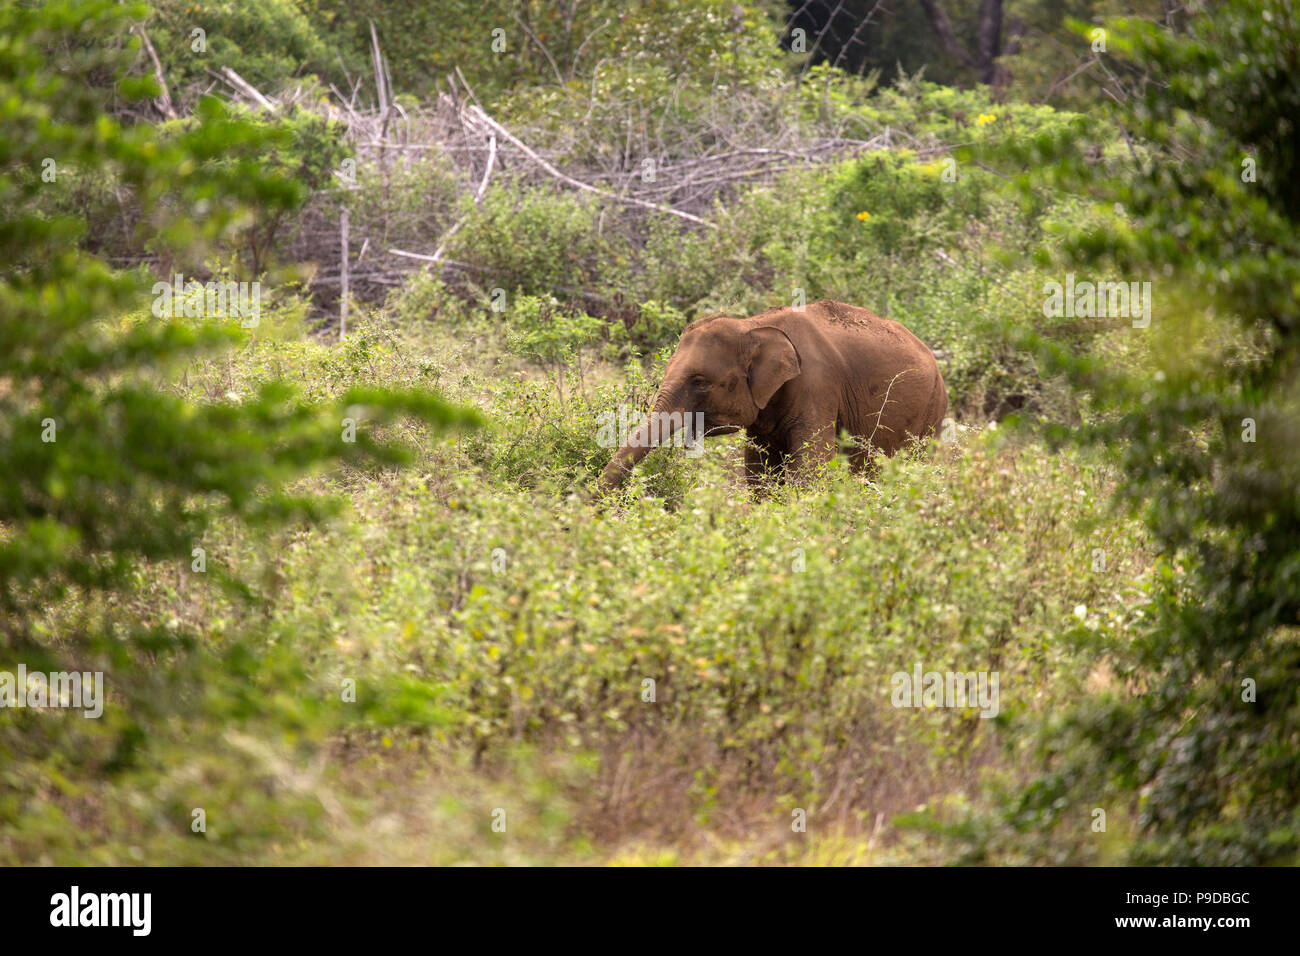 Sur l'éléphant d'une clairière dans le Parc National Minneriya au Sri Lanka. Éléphant (Elephas maximus) sont réputés pour se rassembler autour de ce réservoir en Minn Banque D'Images